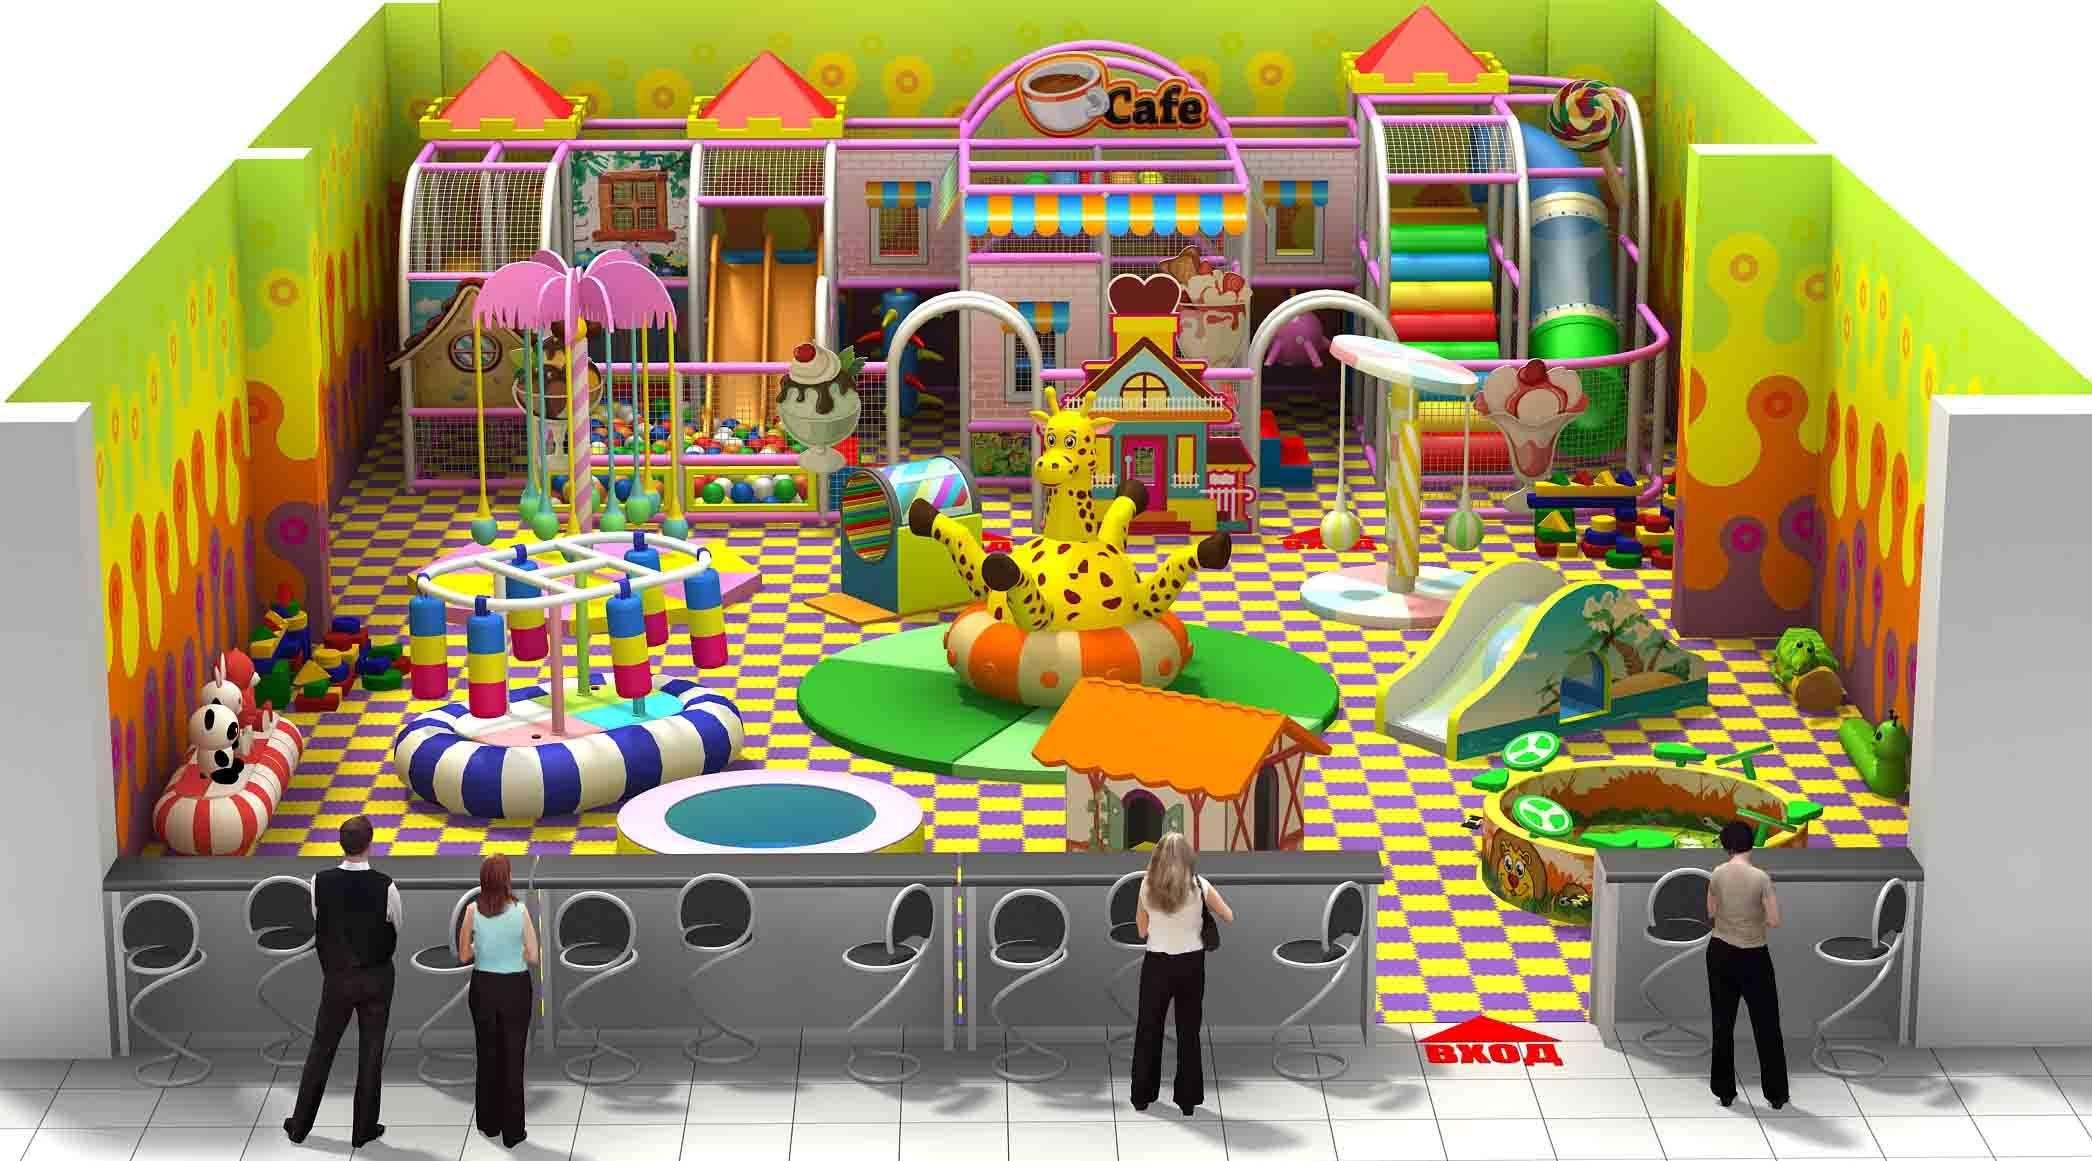 Какие есть детские помещения. Развлекательный центр "детская игровой центр сказка" Динская. Детская игровая комната. Детские игровые лабиринты. Игровая комната для детей.